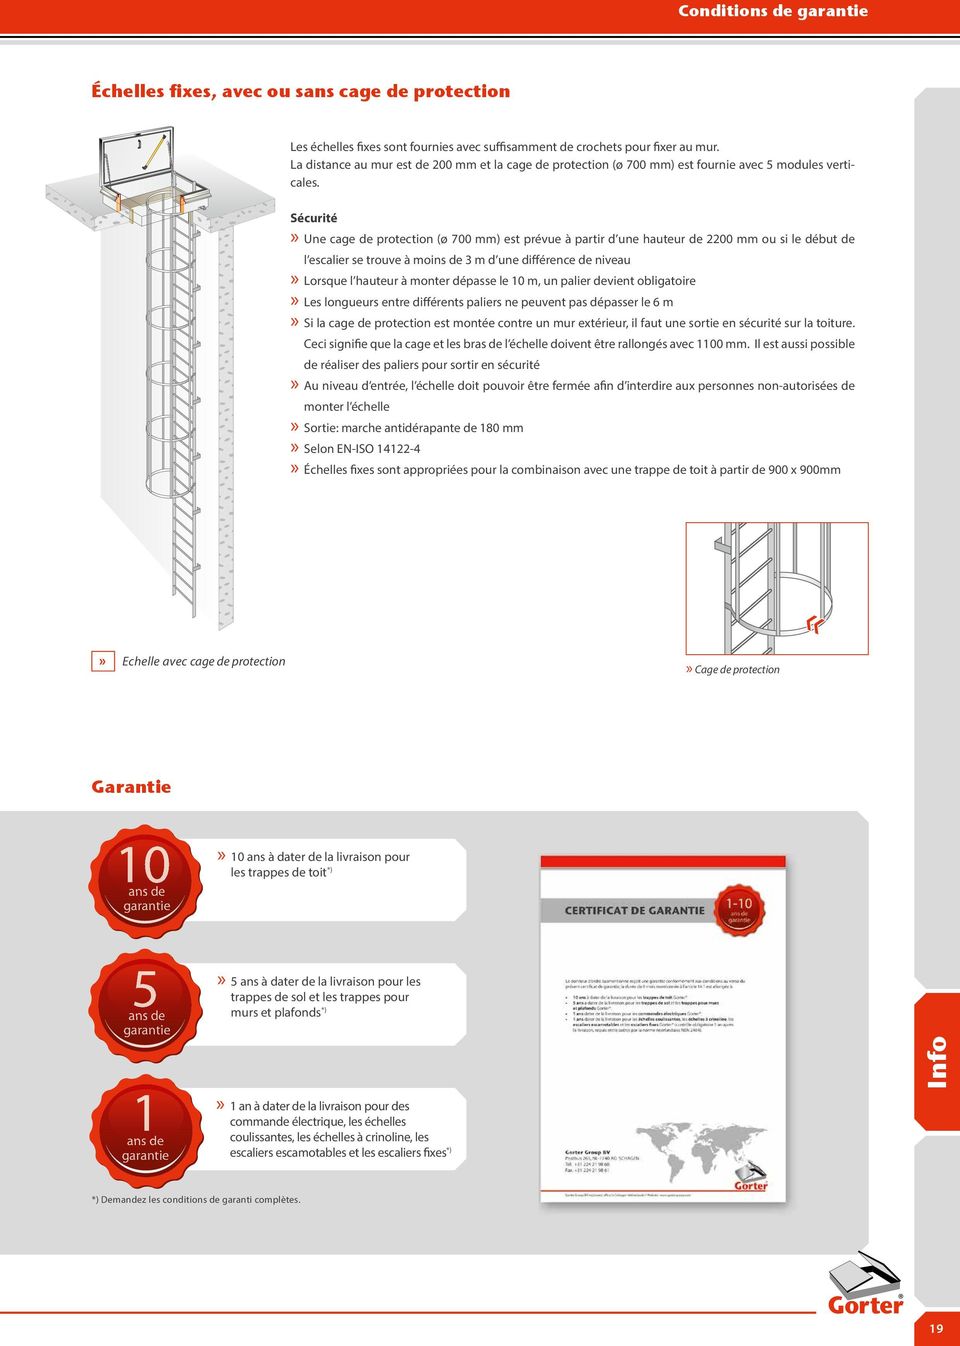 Sécurité x Une cage de protection (ø ) est prévue à partir d une hauteur de 2200 mm ou si le début de l escalier se trouve à moins de 3 m d une différence de niveau x Lorsque l hauteur à monter